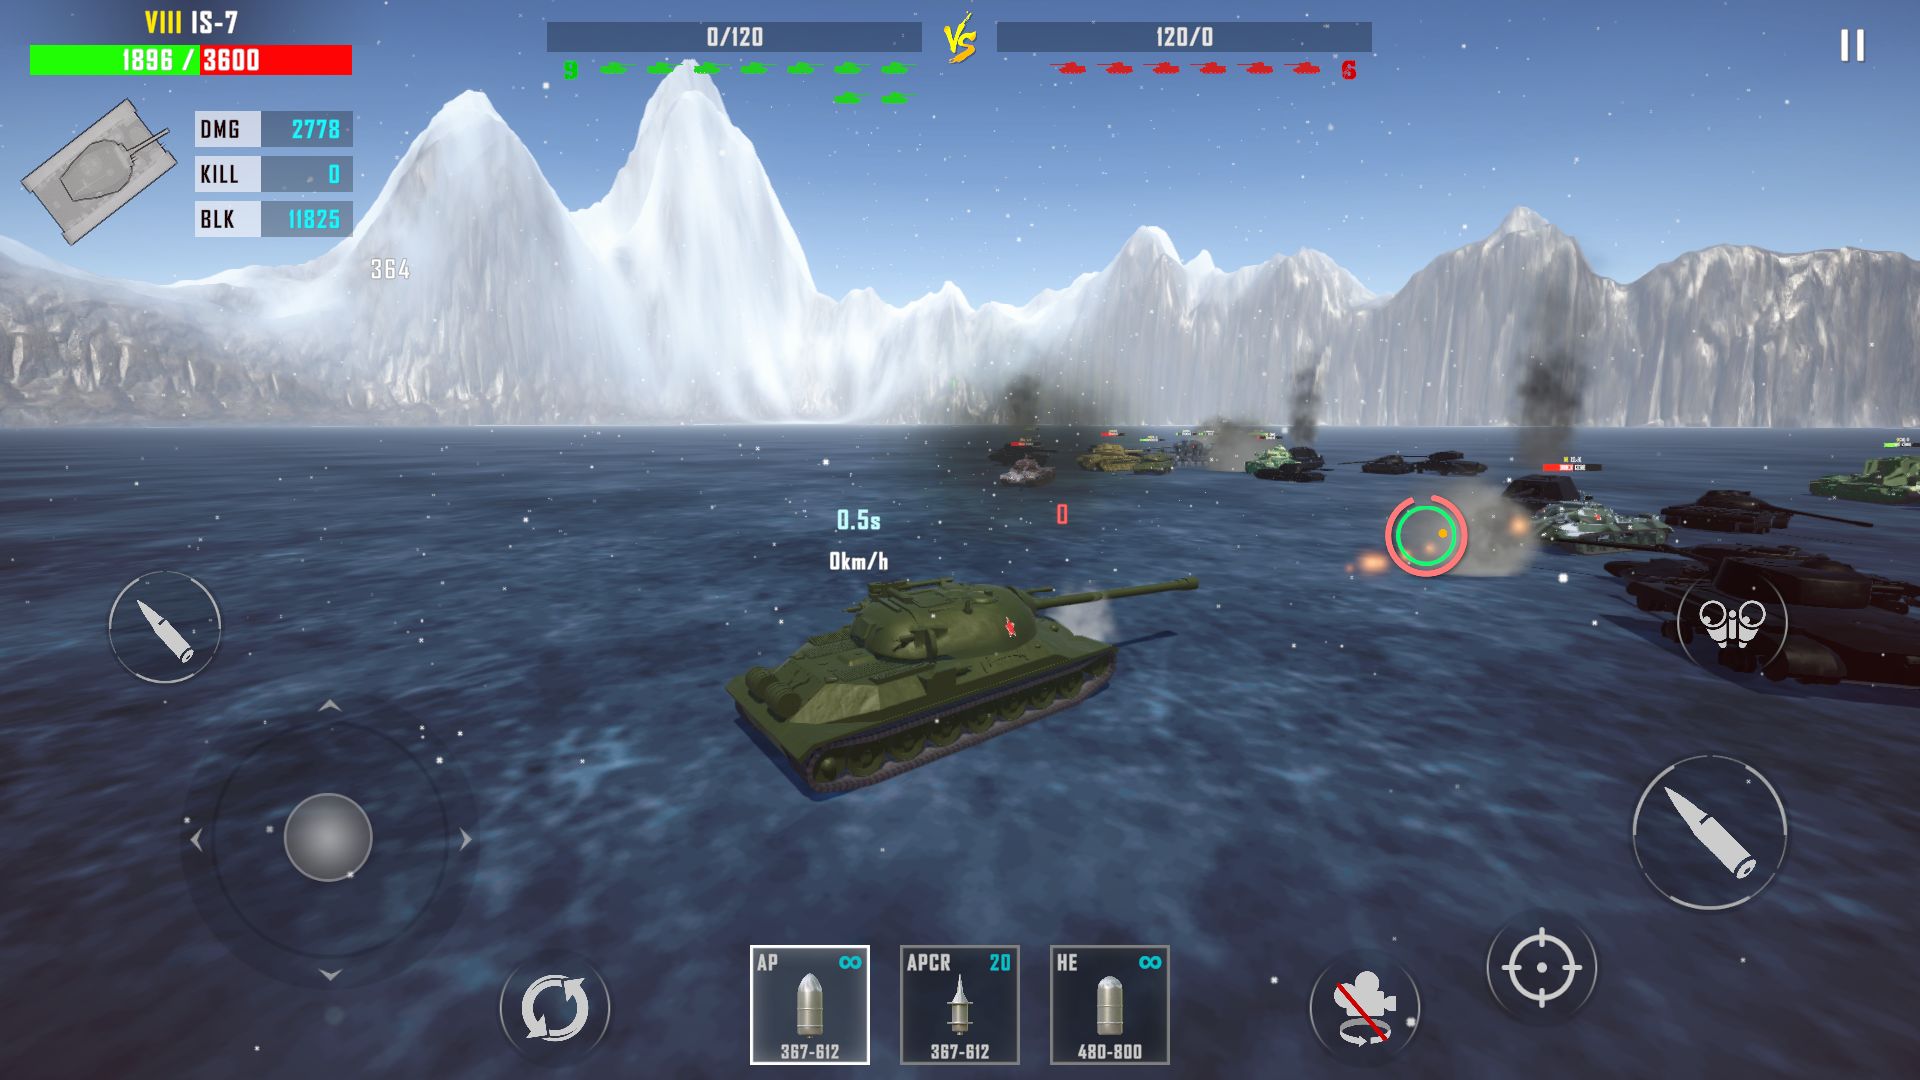 Tank Hunter 3 - Android game screenshots.